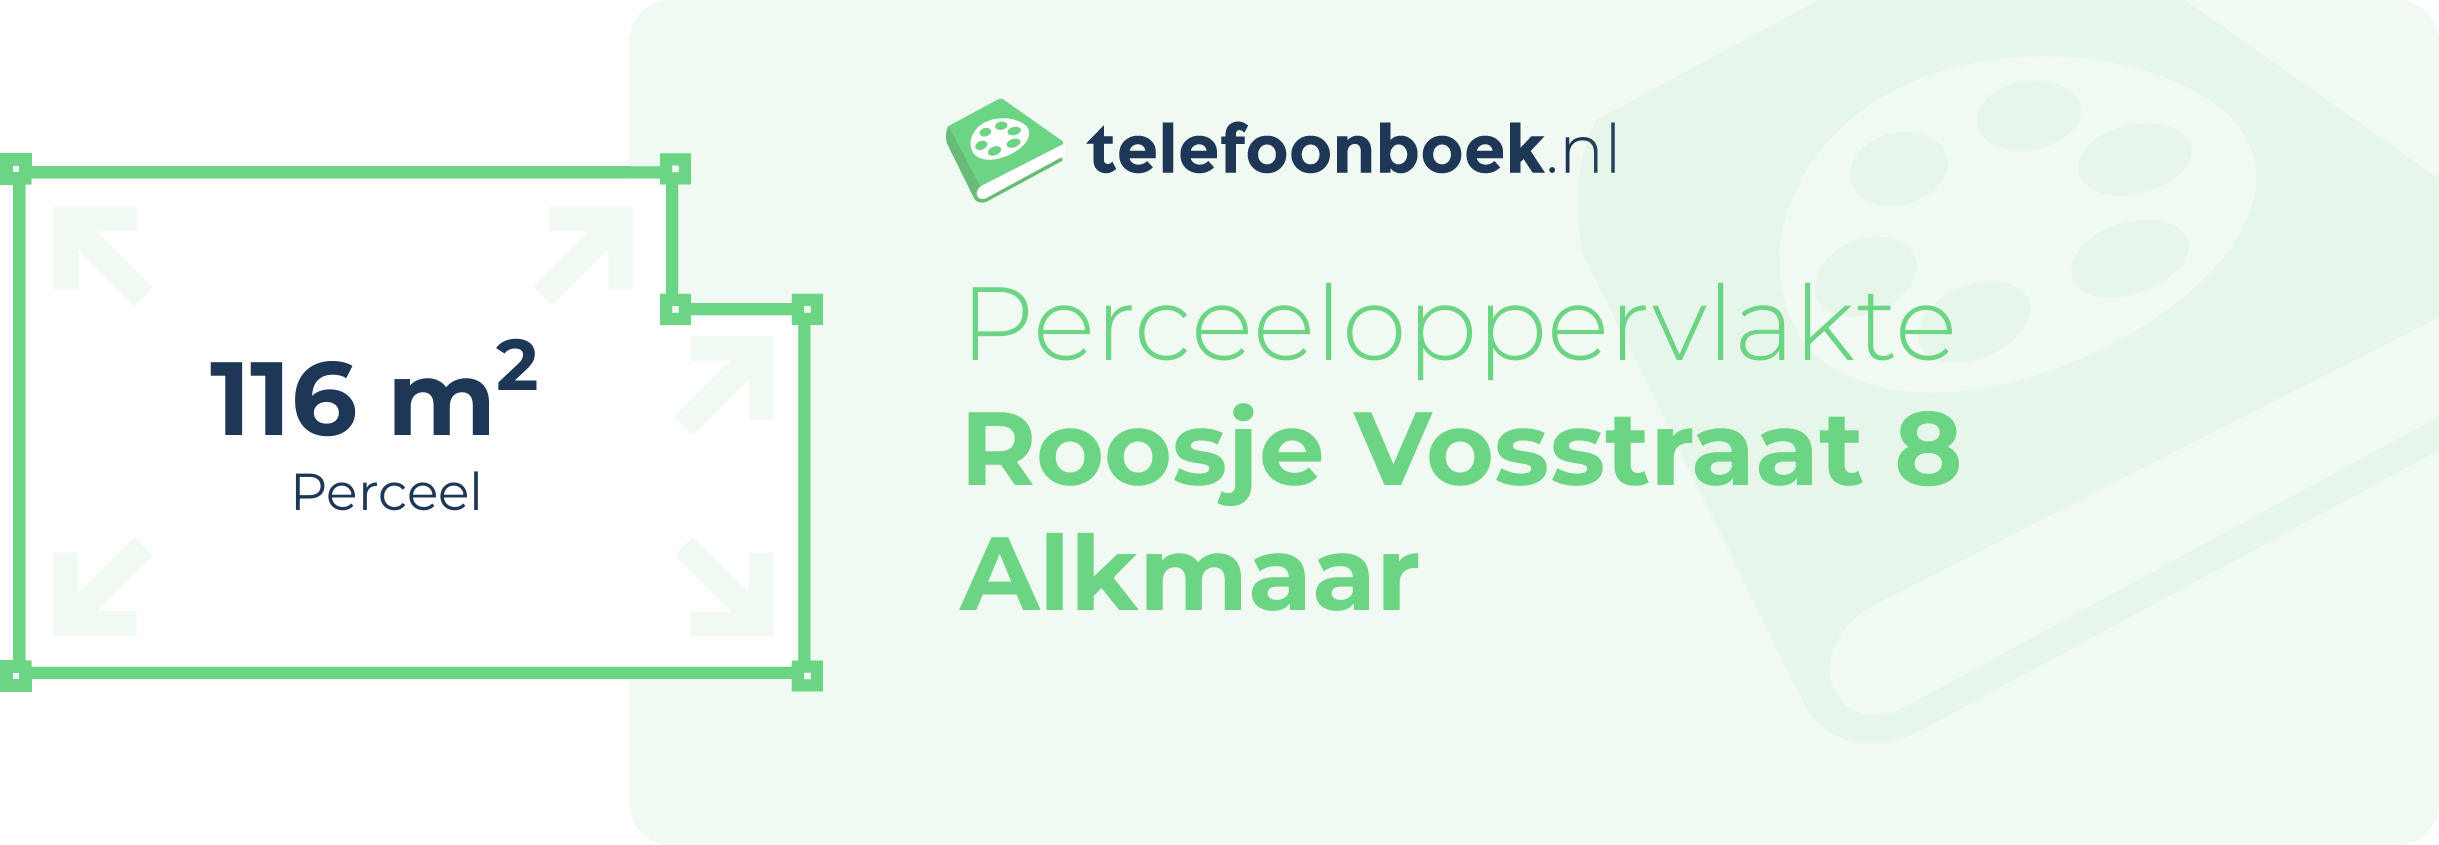 Perceeloppervlakte Roosje Vosstraat 8 Alkmaar